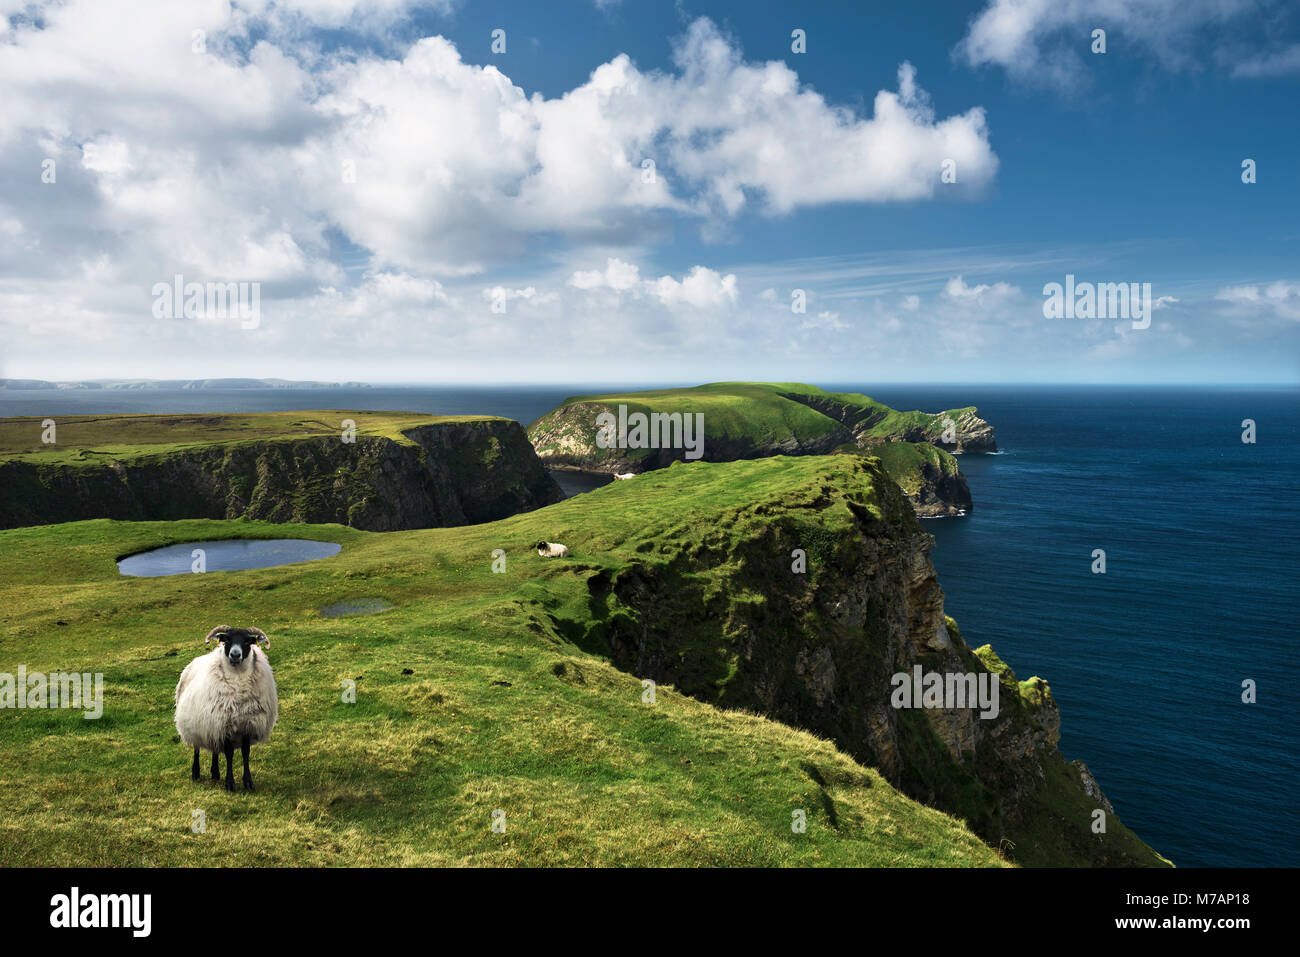 Sheep at grassy cliffs at Benwee Head, Ireland Stock Photo